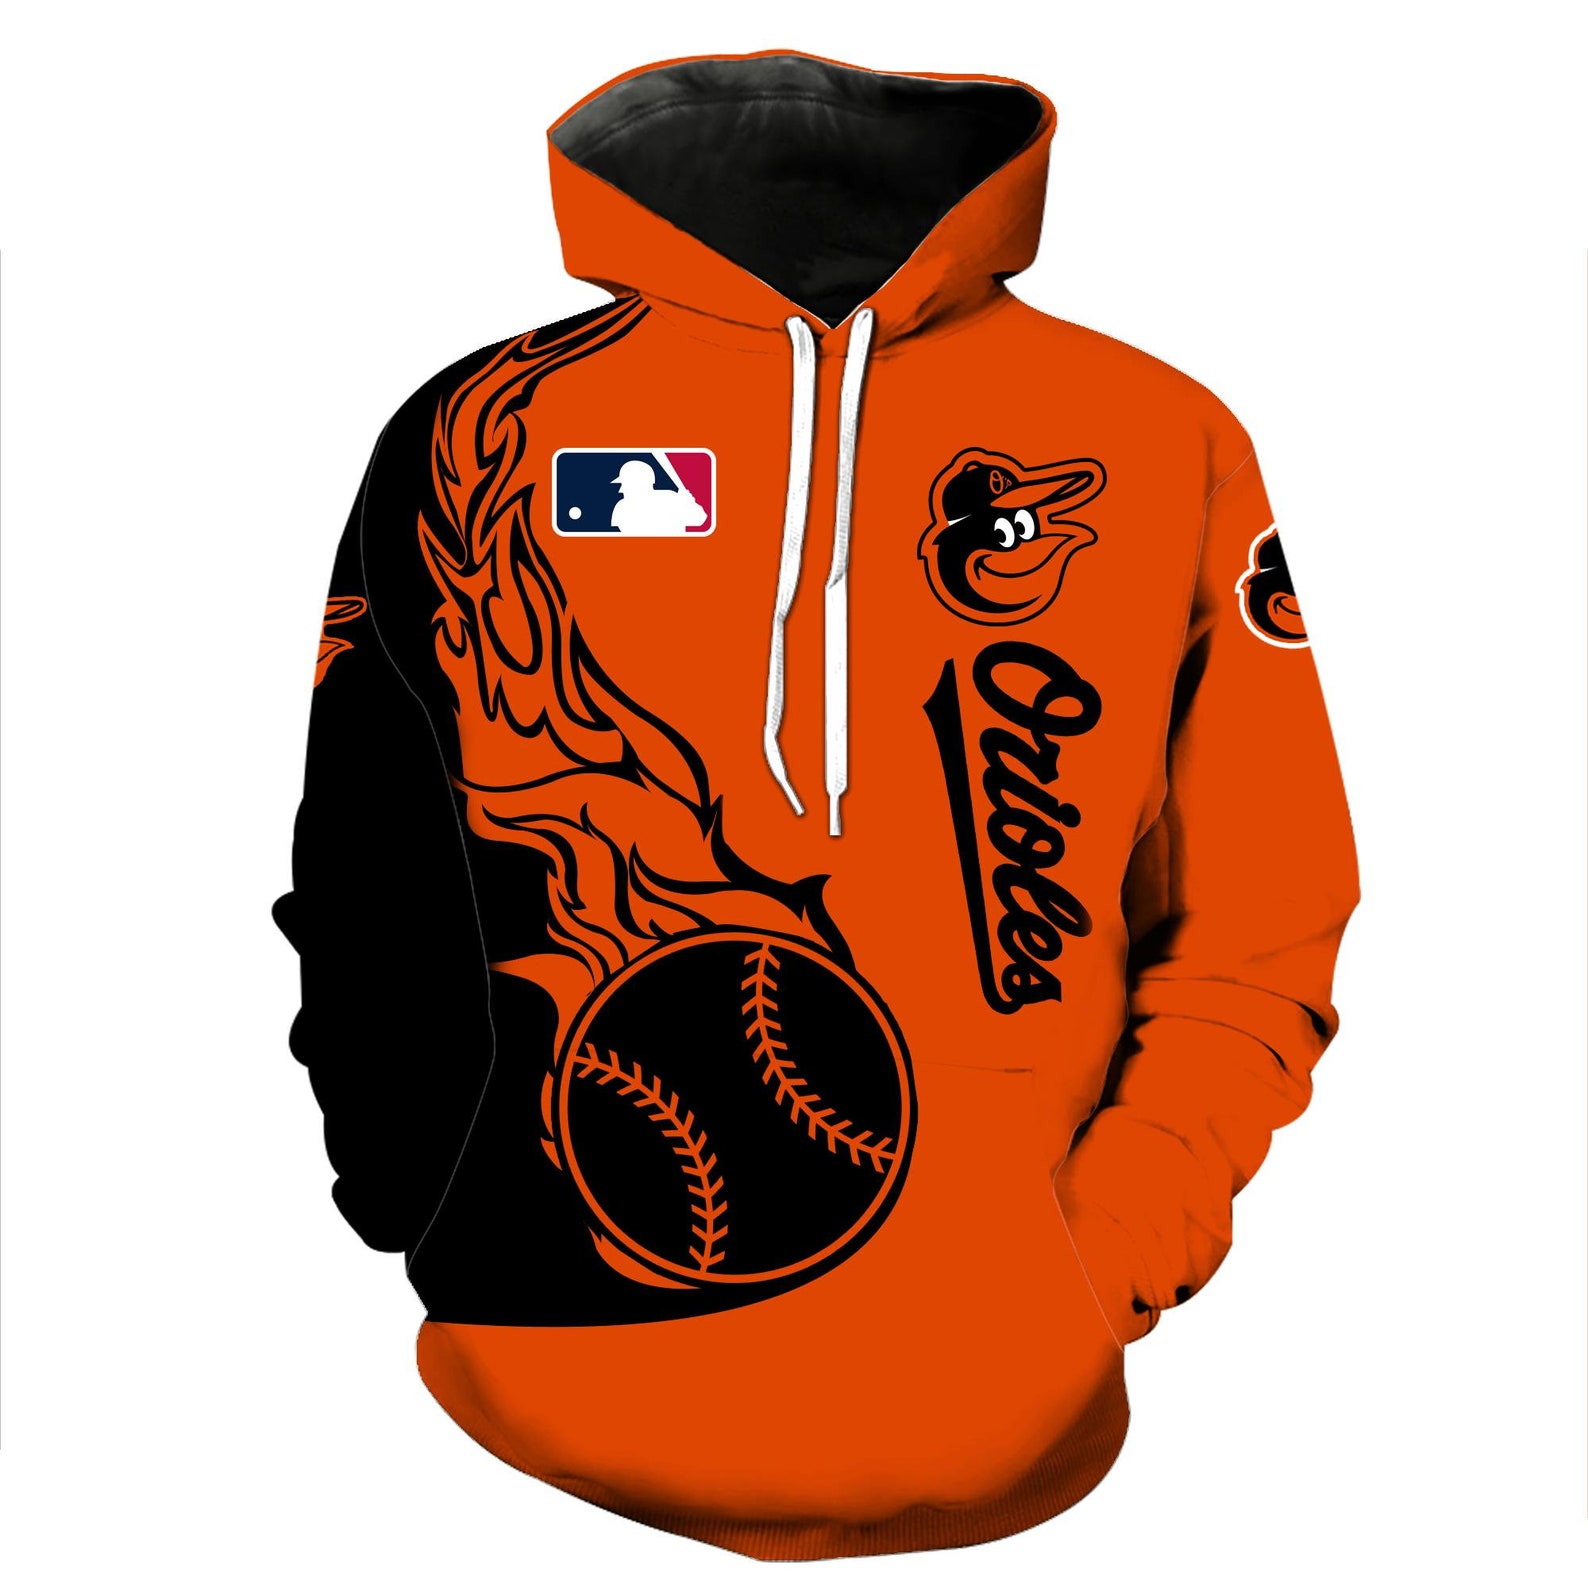 MLB Baltimore Orioles Hoodie Design Hoodies & Sweatshirts | Etsy